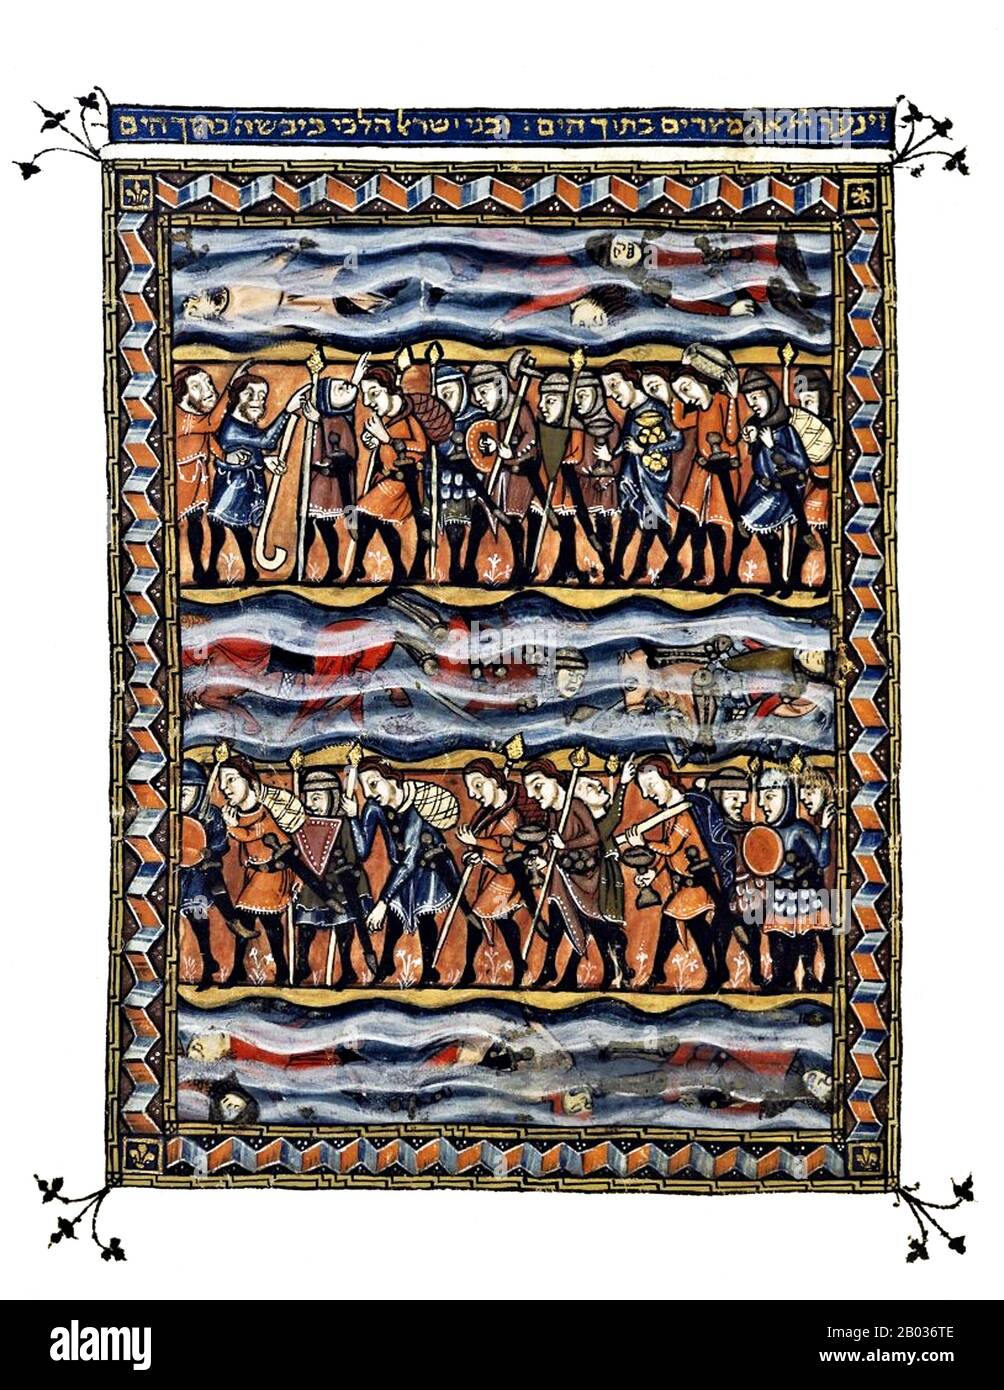 Die Rylands Haggadah, die irgendwann um 1330 in Katalonien entstanden sind, ist ein Meisterwerk der jüdischen Kunst, Neben Seiten von Piyutim umgeben von verzierten dekorativen und figürlichen Mikrographie, reich verziertem Haggadah-Text und Segnungen, Es gibt einen 13-seitigen Miniaturzyklus, der die Exodus-Geschichte von Moses am brennenden Bush bis Zur Überquerung des Roten Meeres darstellt. Stockfoto